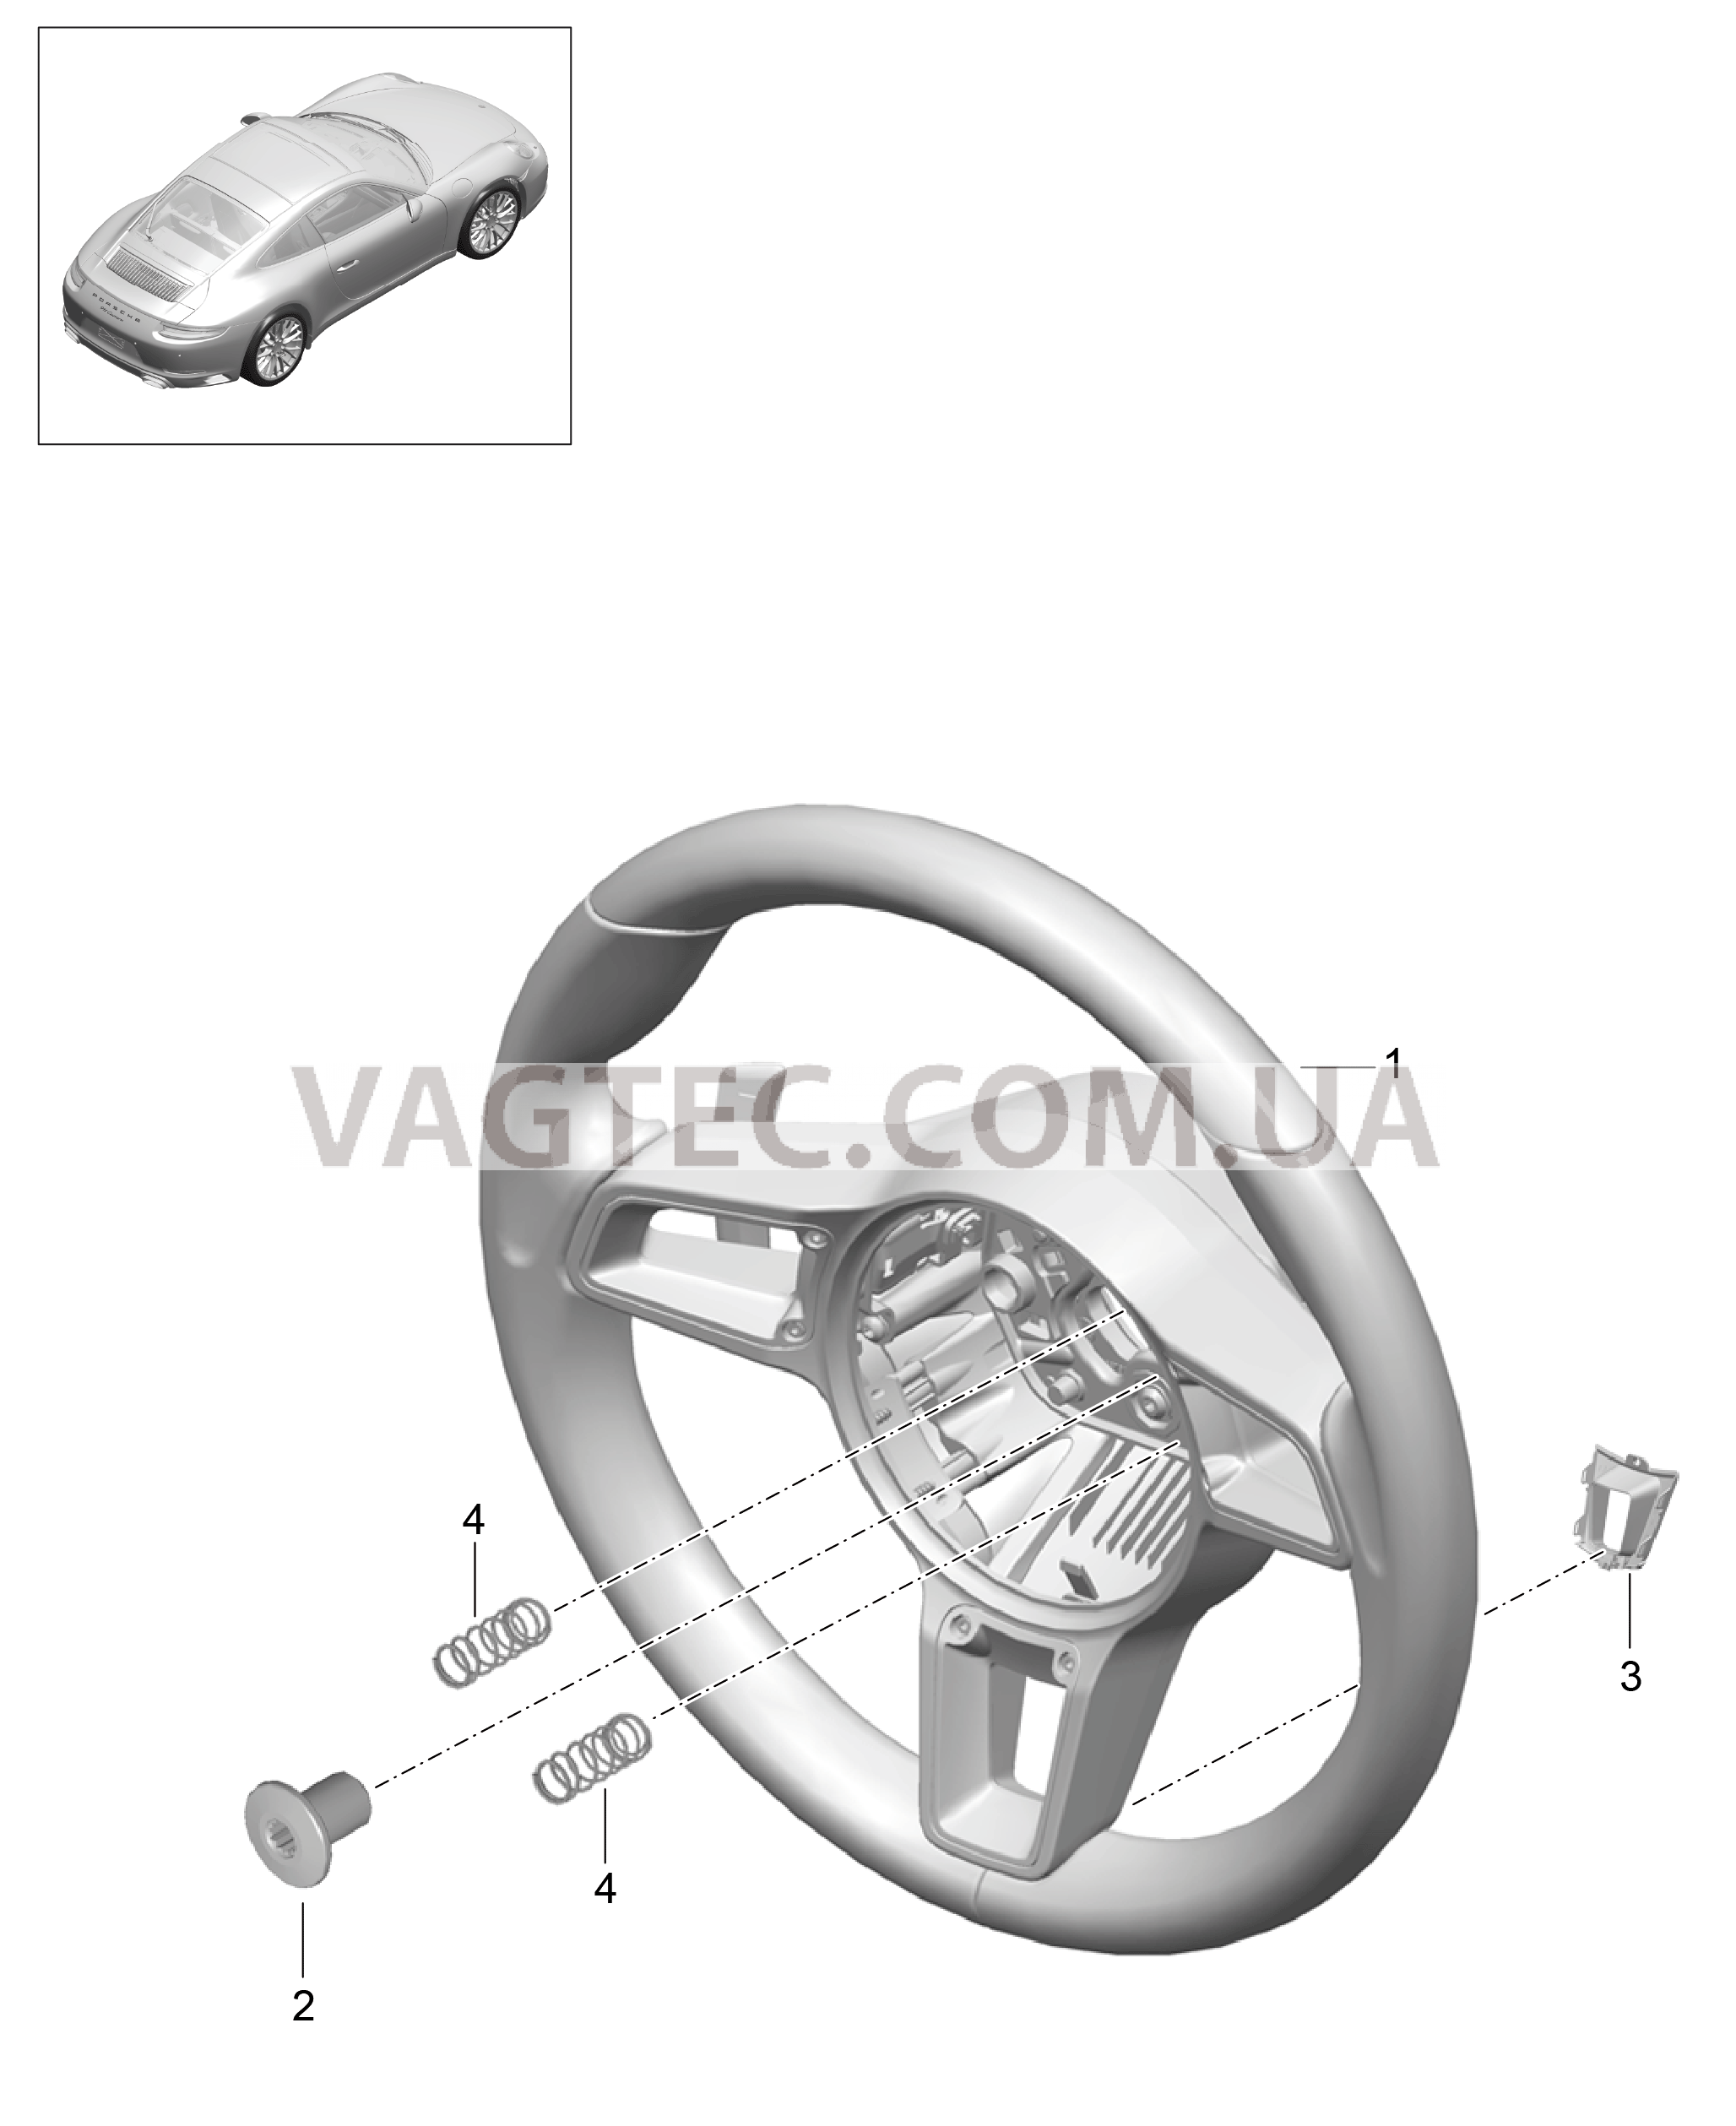 403-005 Рулевые колеса, Мкпп
						
						I487 для PORSCHE 911.Carrera 2017-2018